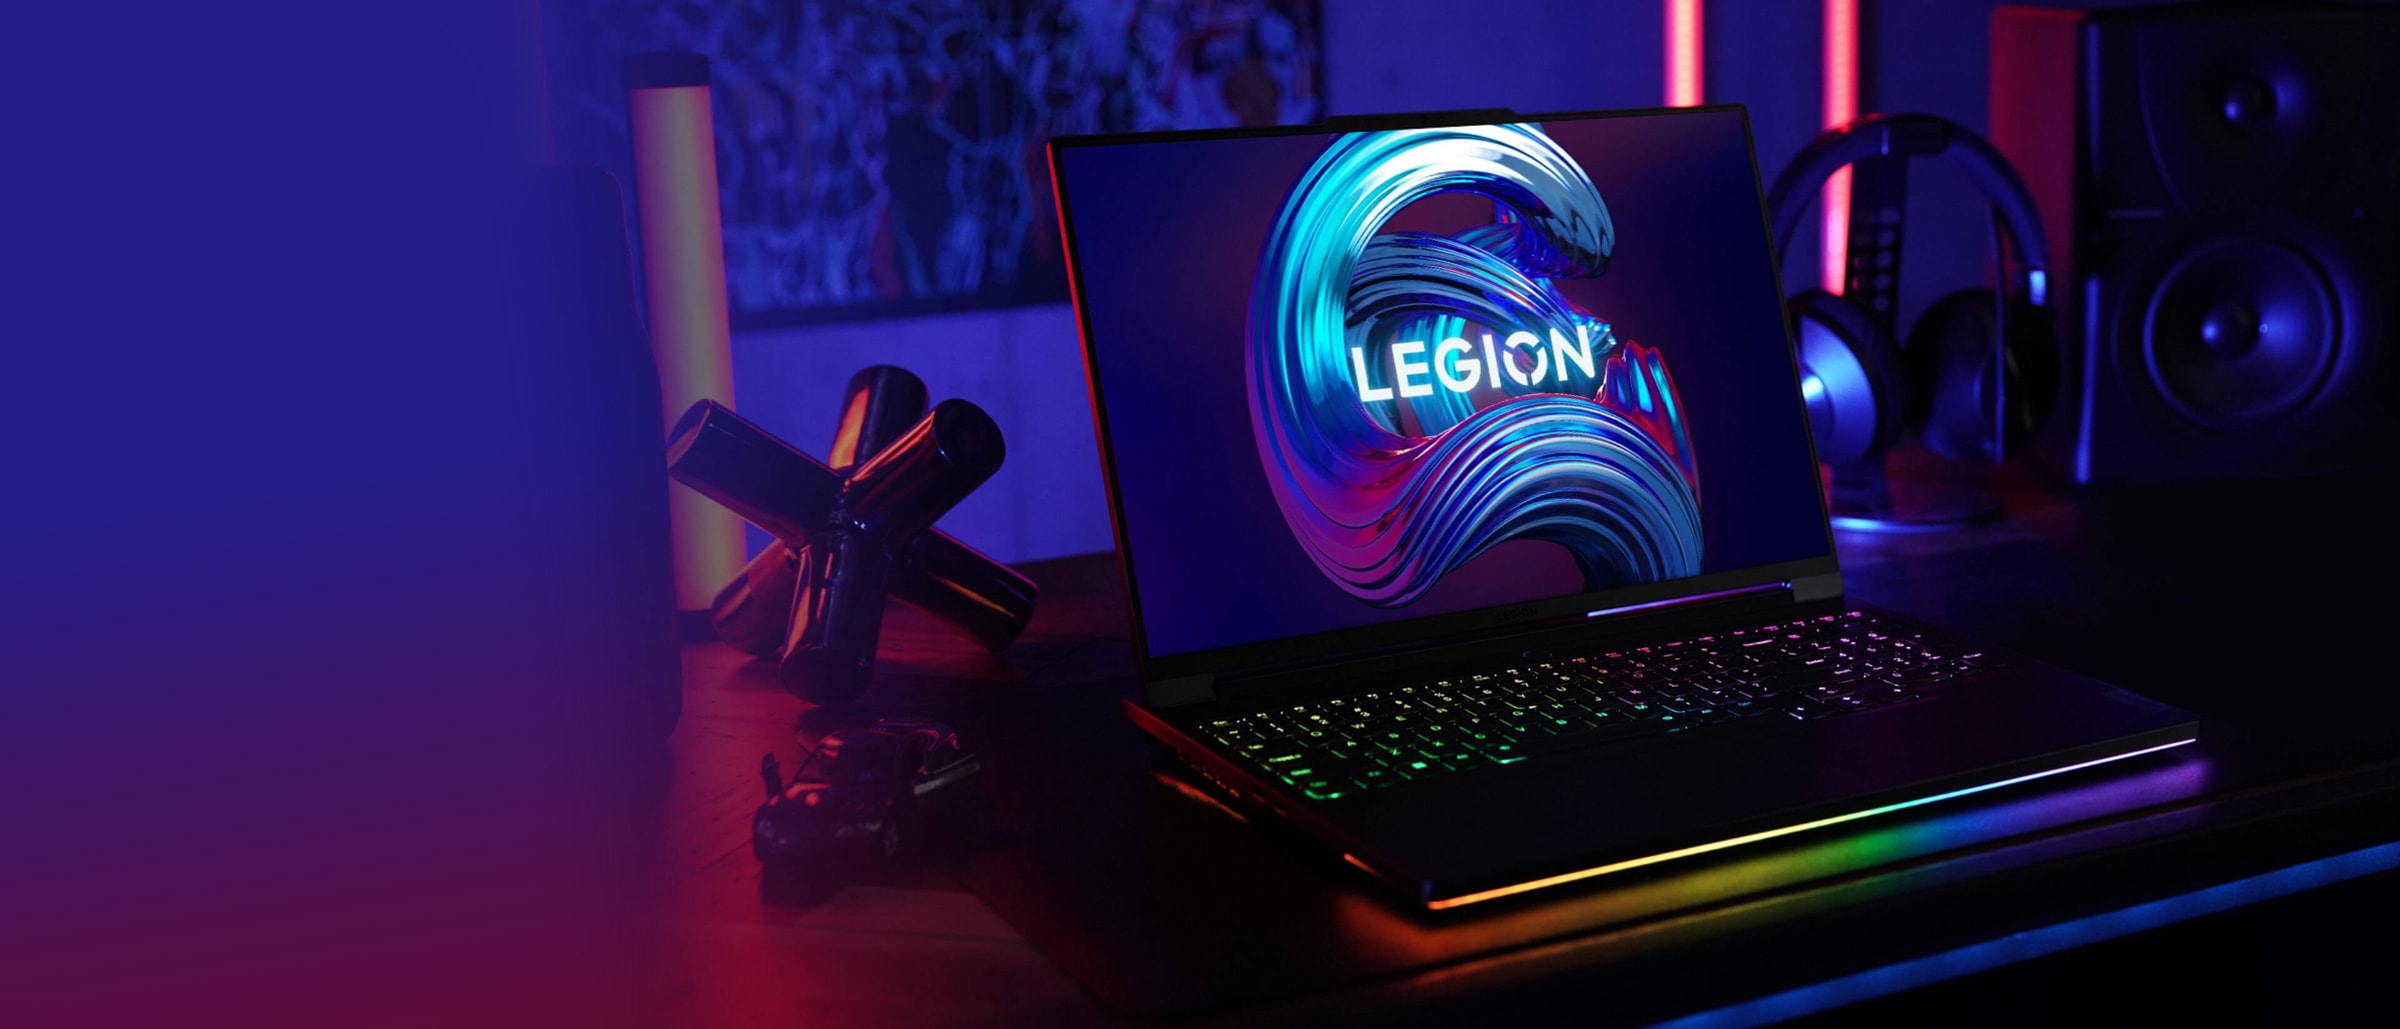 Pohľad spredu na notebook Lenovo Legion otvorený na 90 stupňov, zobrazujúci klávesnicu, displej a je mierne naklonený, aby boli vidieť porty na ľavej strane.